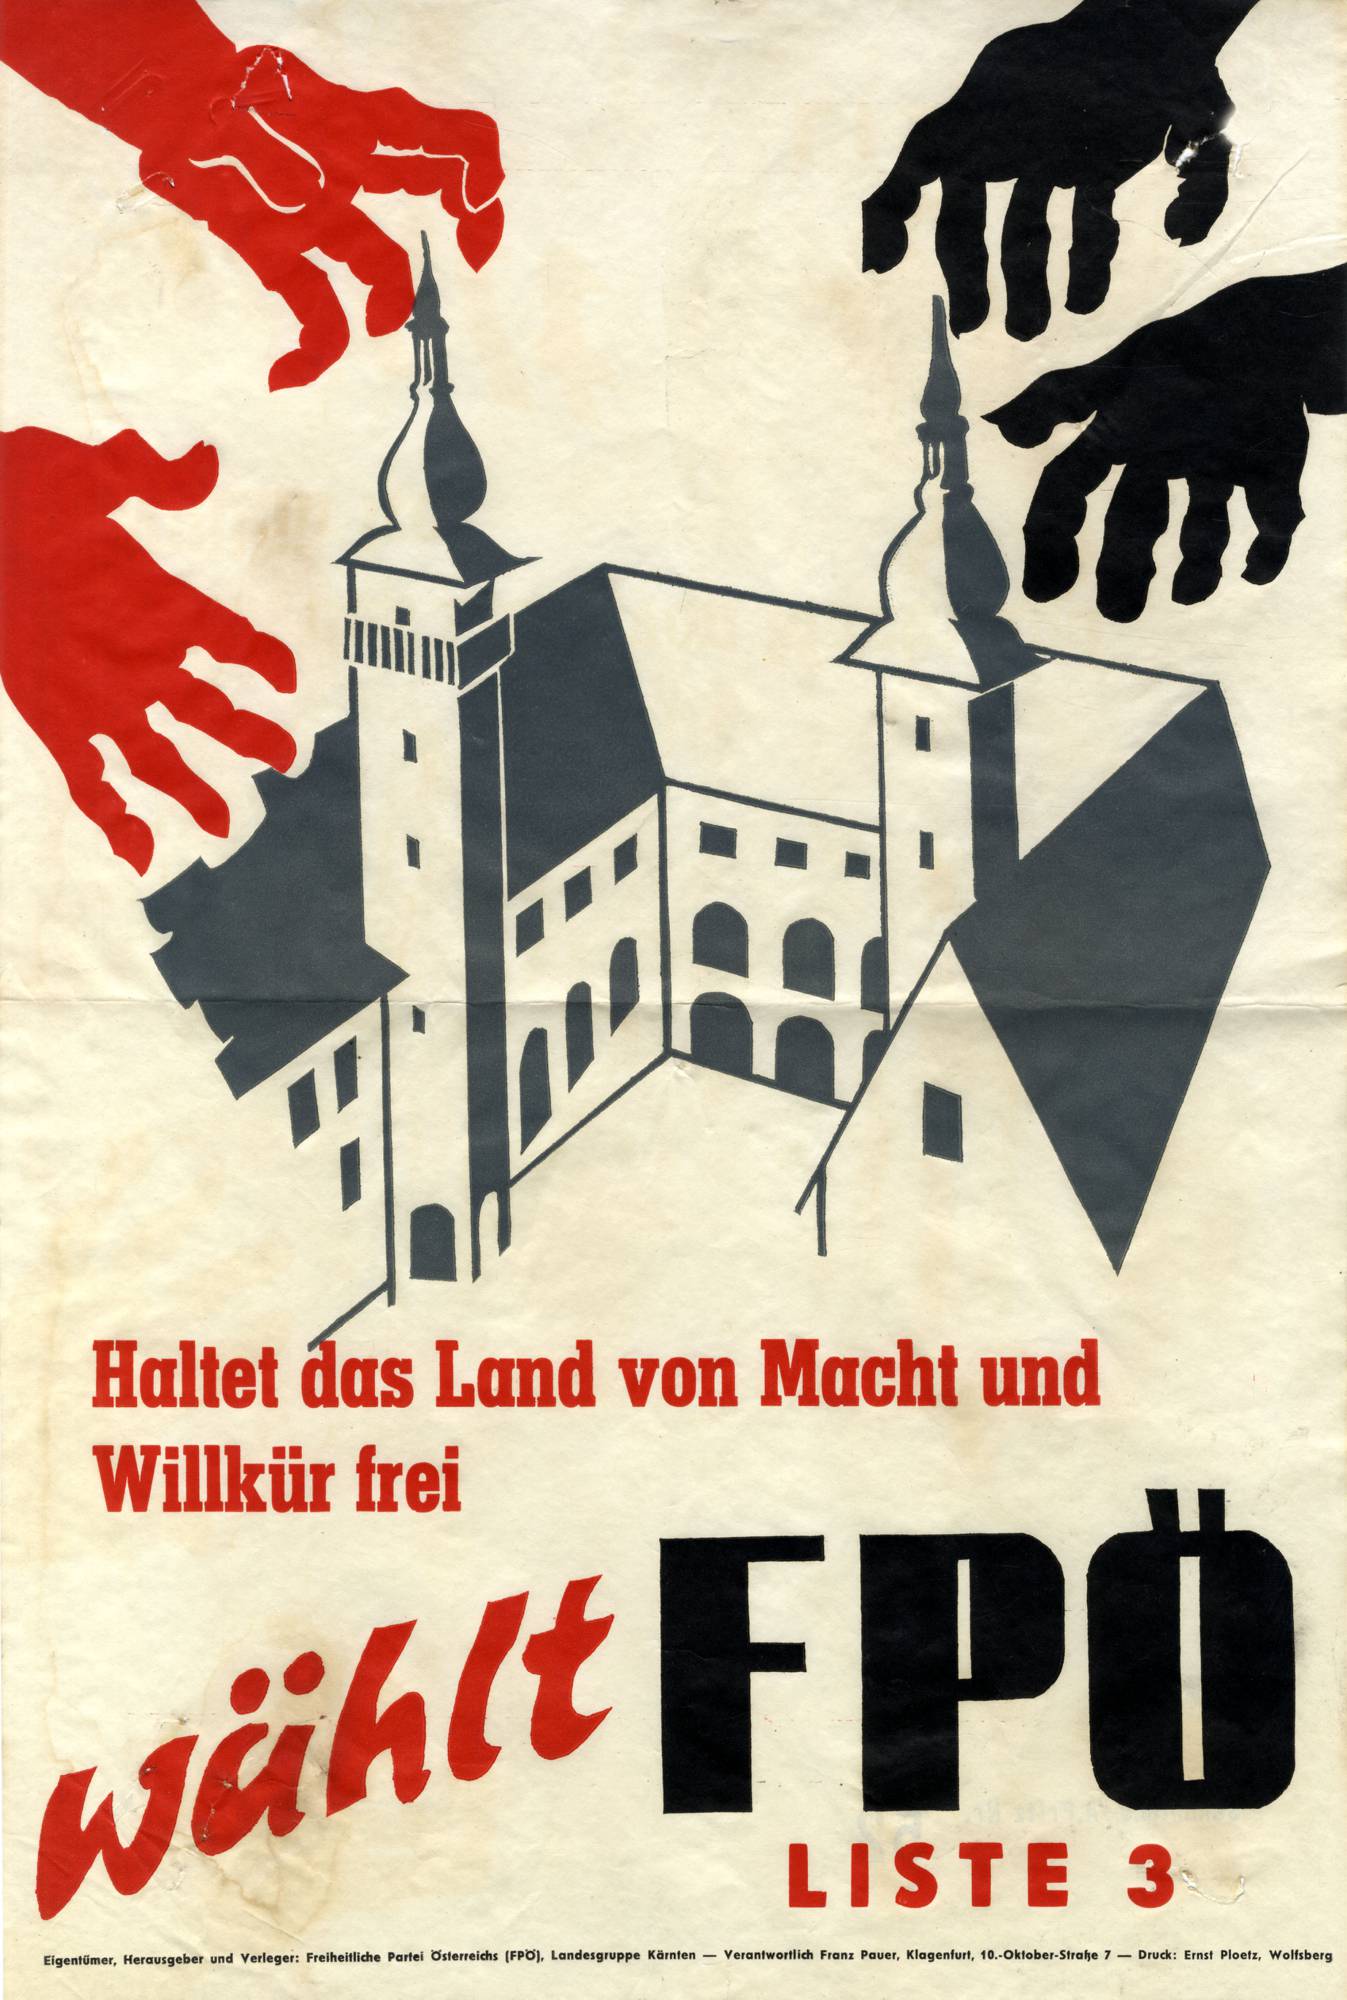 Die FPÖ stilisiert sich als Alternative zur rot-schwarzen Dauerkoalition. In Kärnten saß sie allerdings selbst in der Konzentrationsregierung!